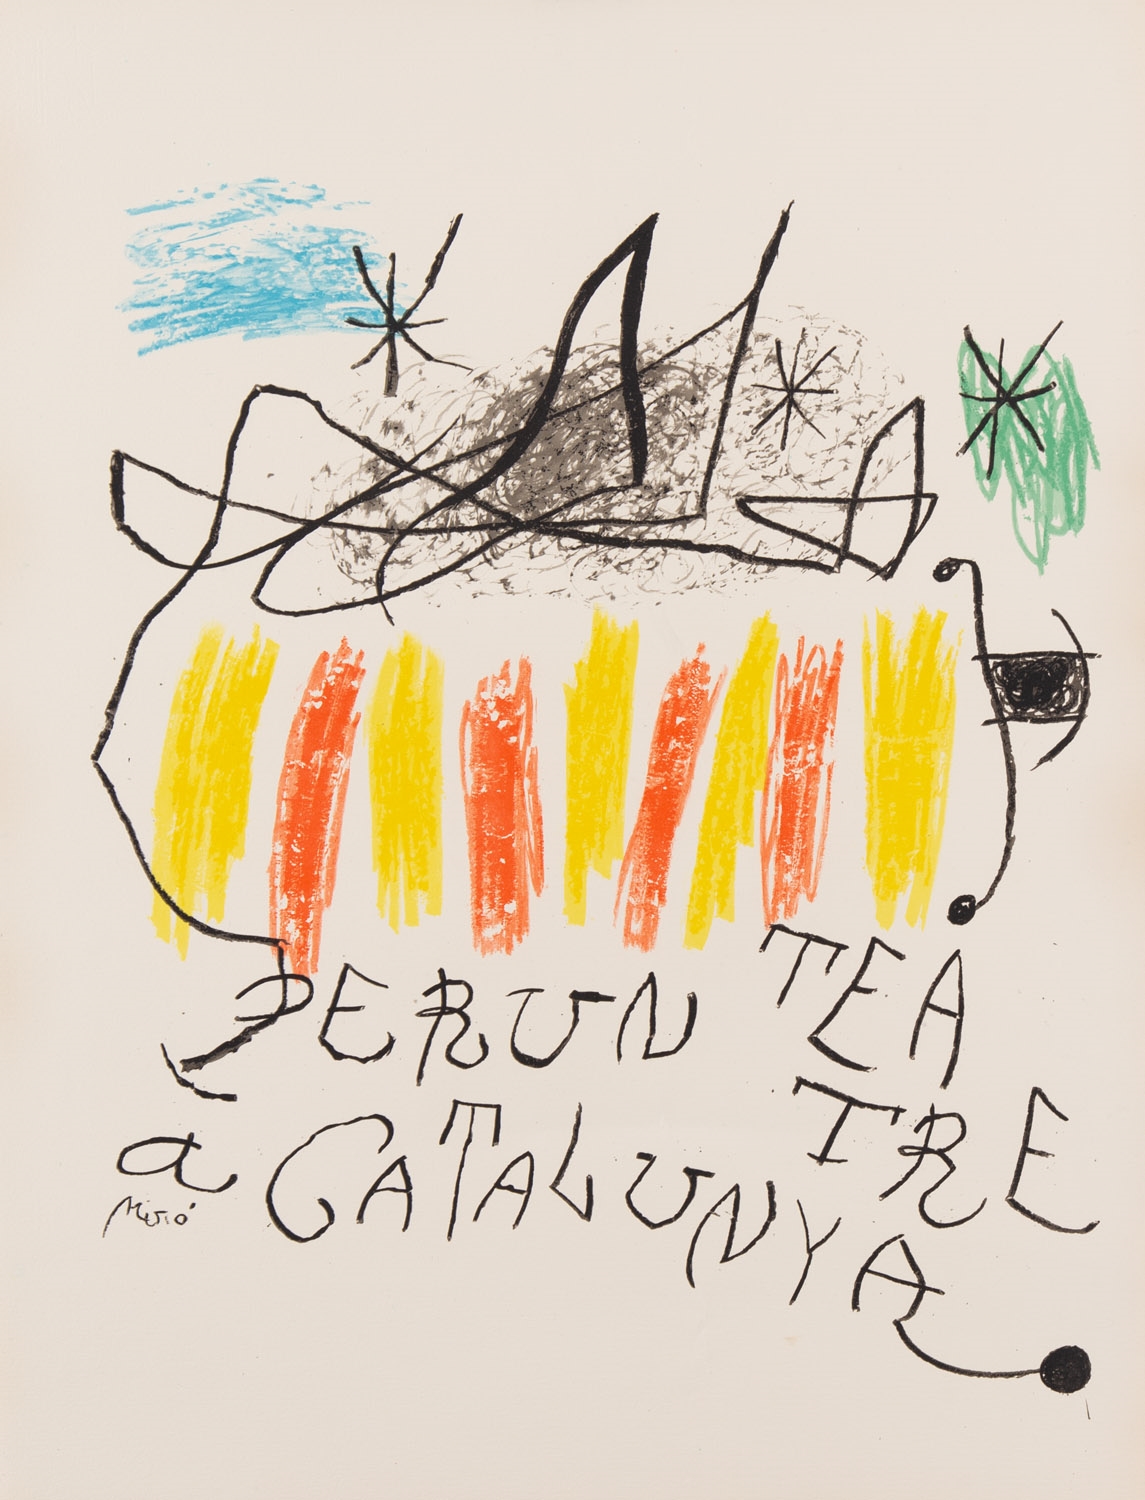 PER UN TEATRE A CATALUNYA by Joan Miró, 1973